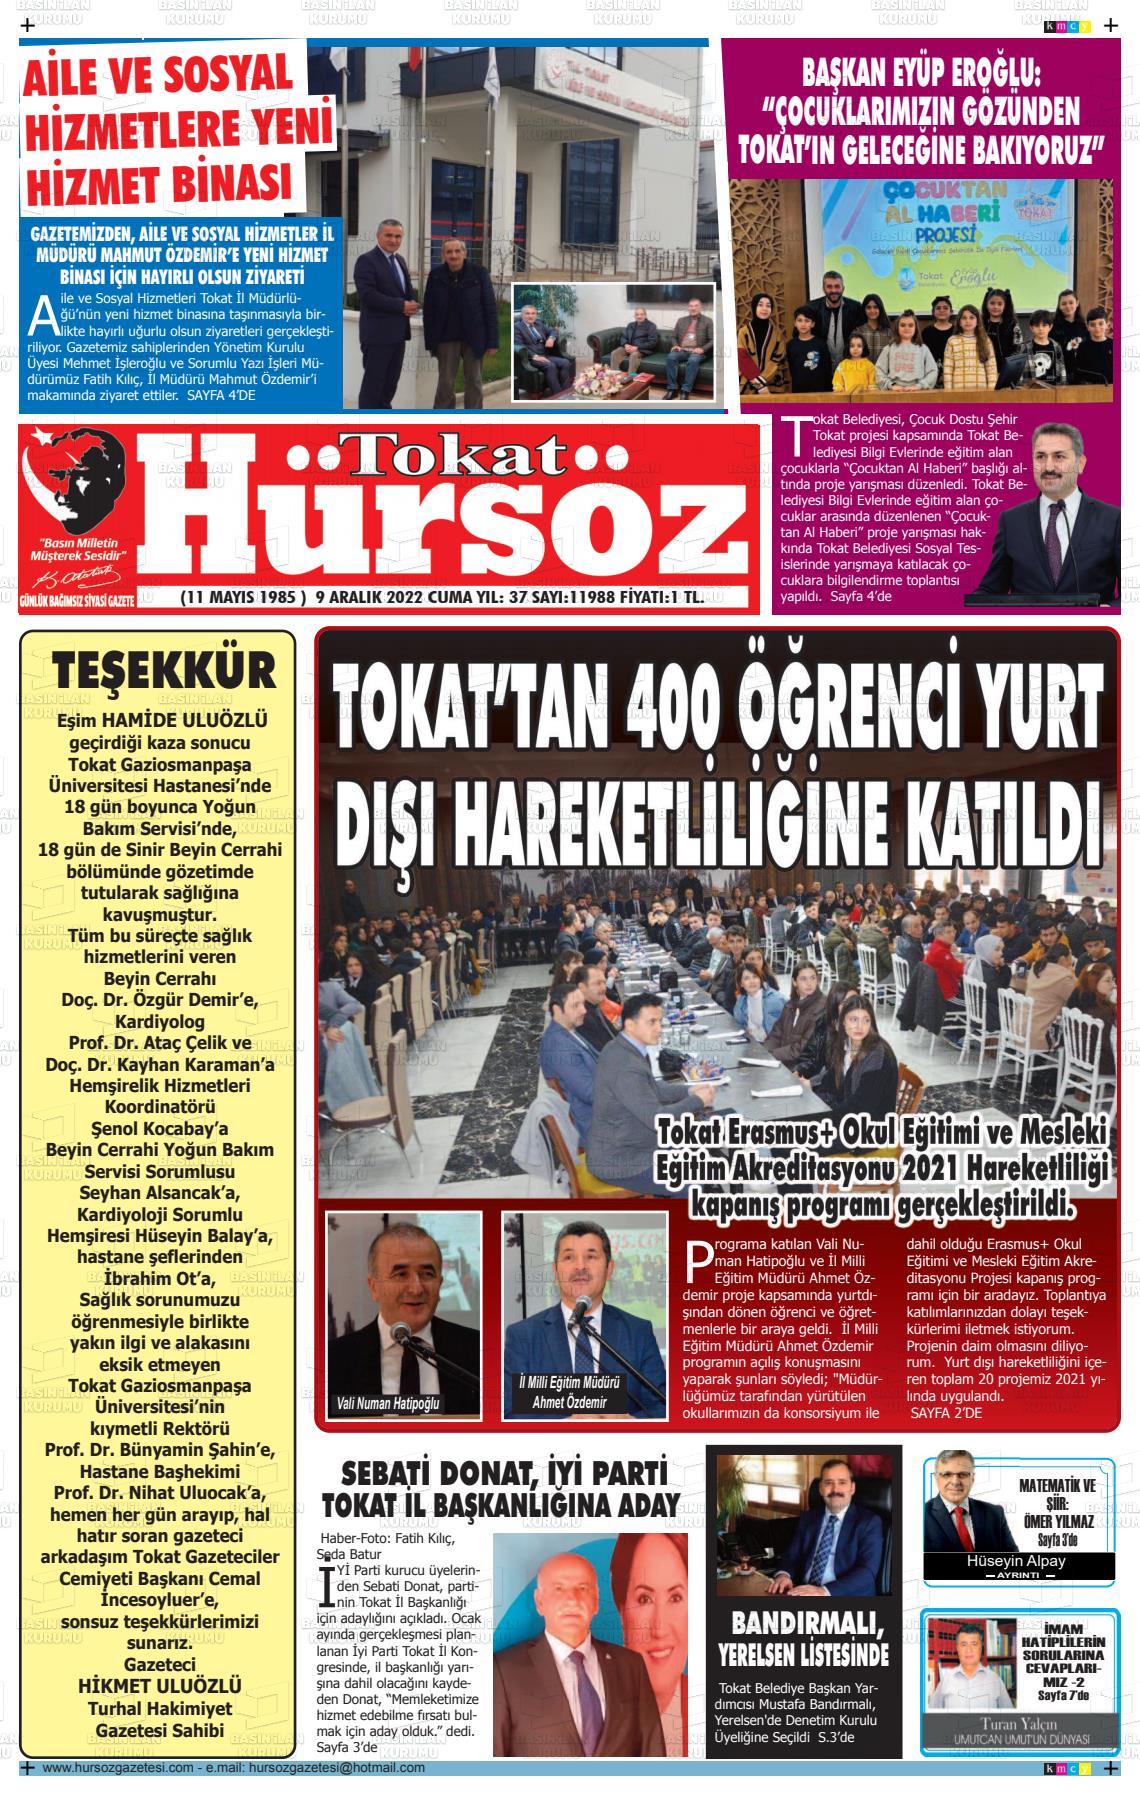 09 Aralık 2022 Hürsöz Gazete Manşeti